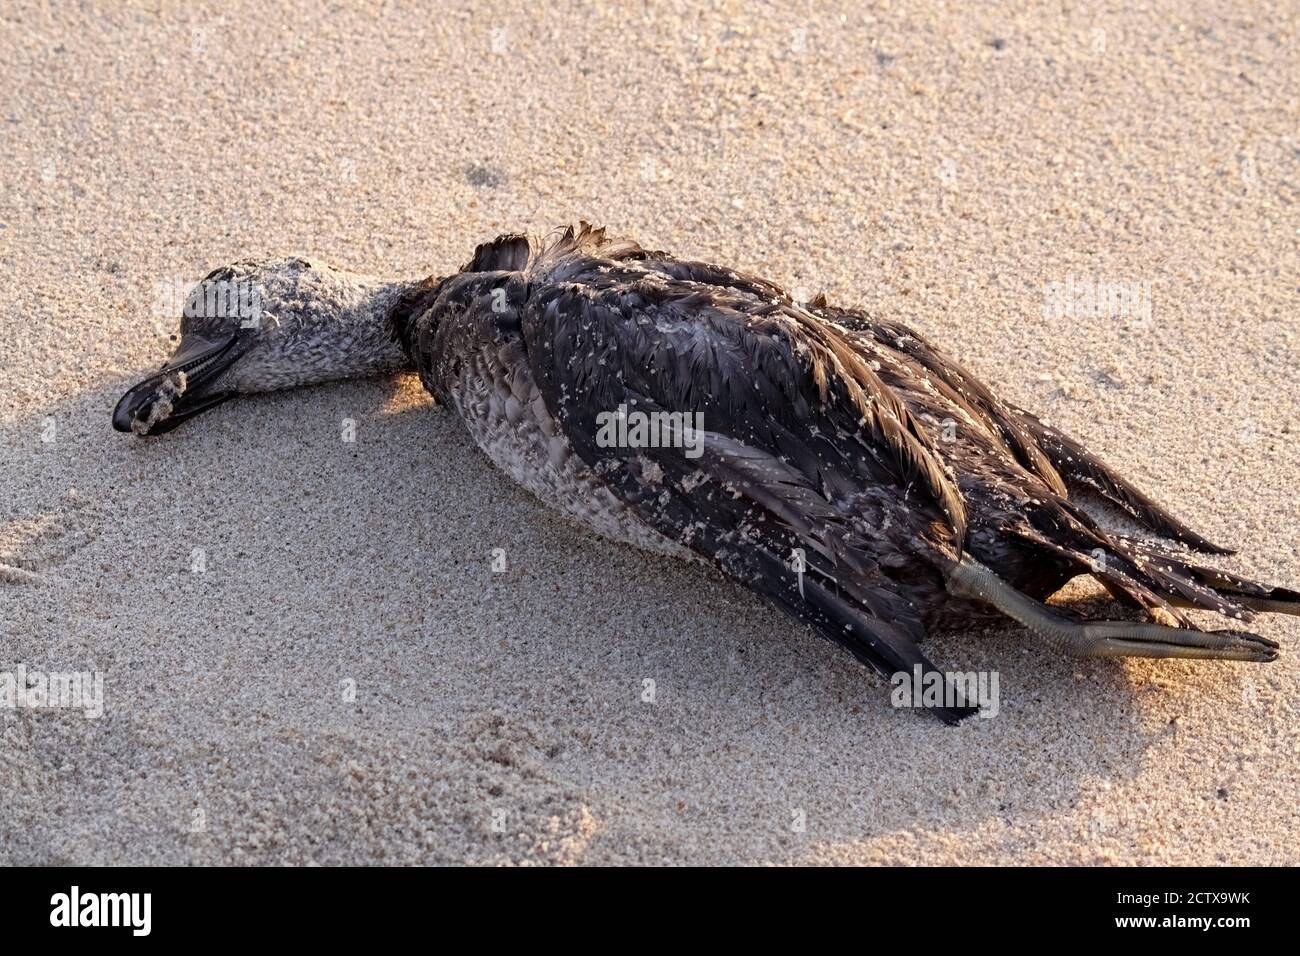 Dead sea duck. Northern portuguese coast. Stock Photo